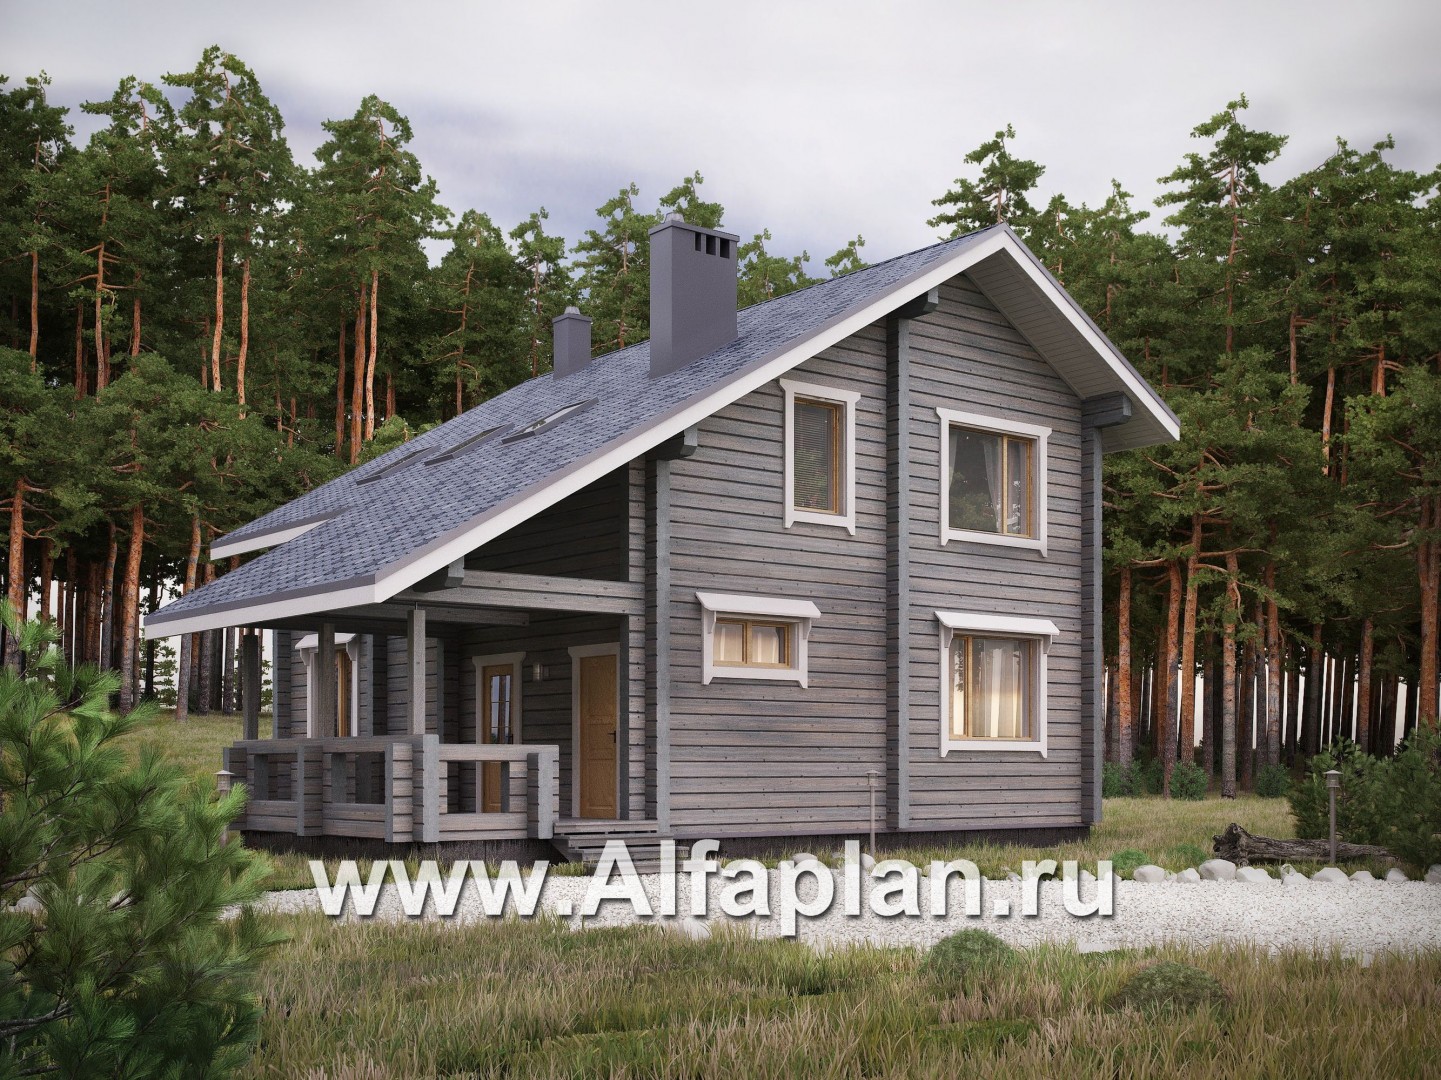 Примеры дизайн-проектов интерьеров деревянных домов